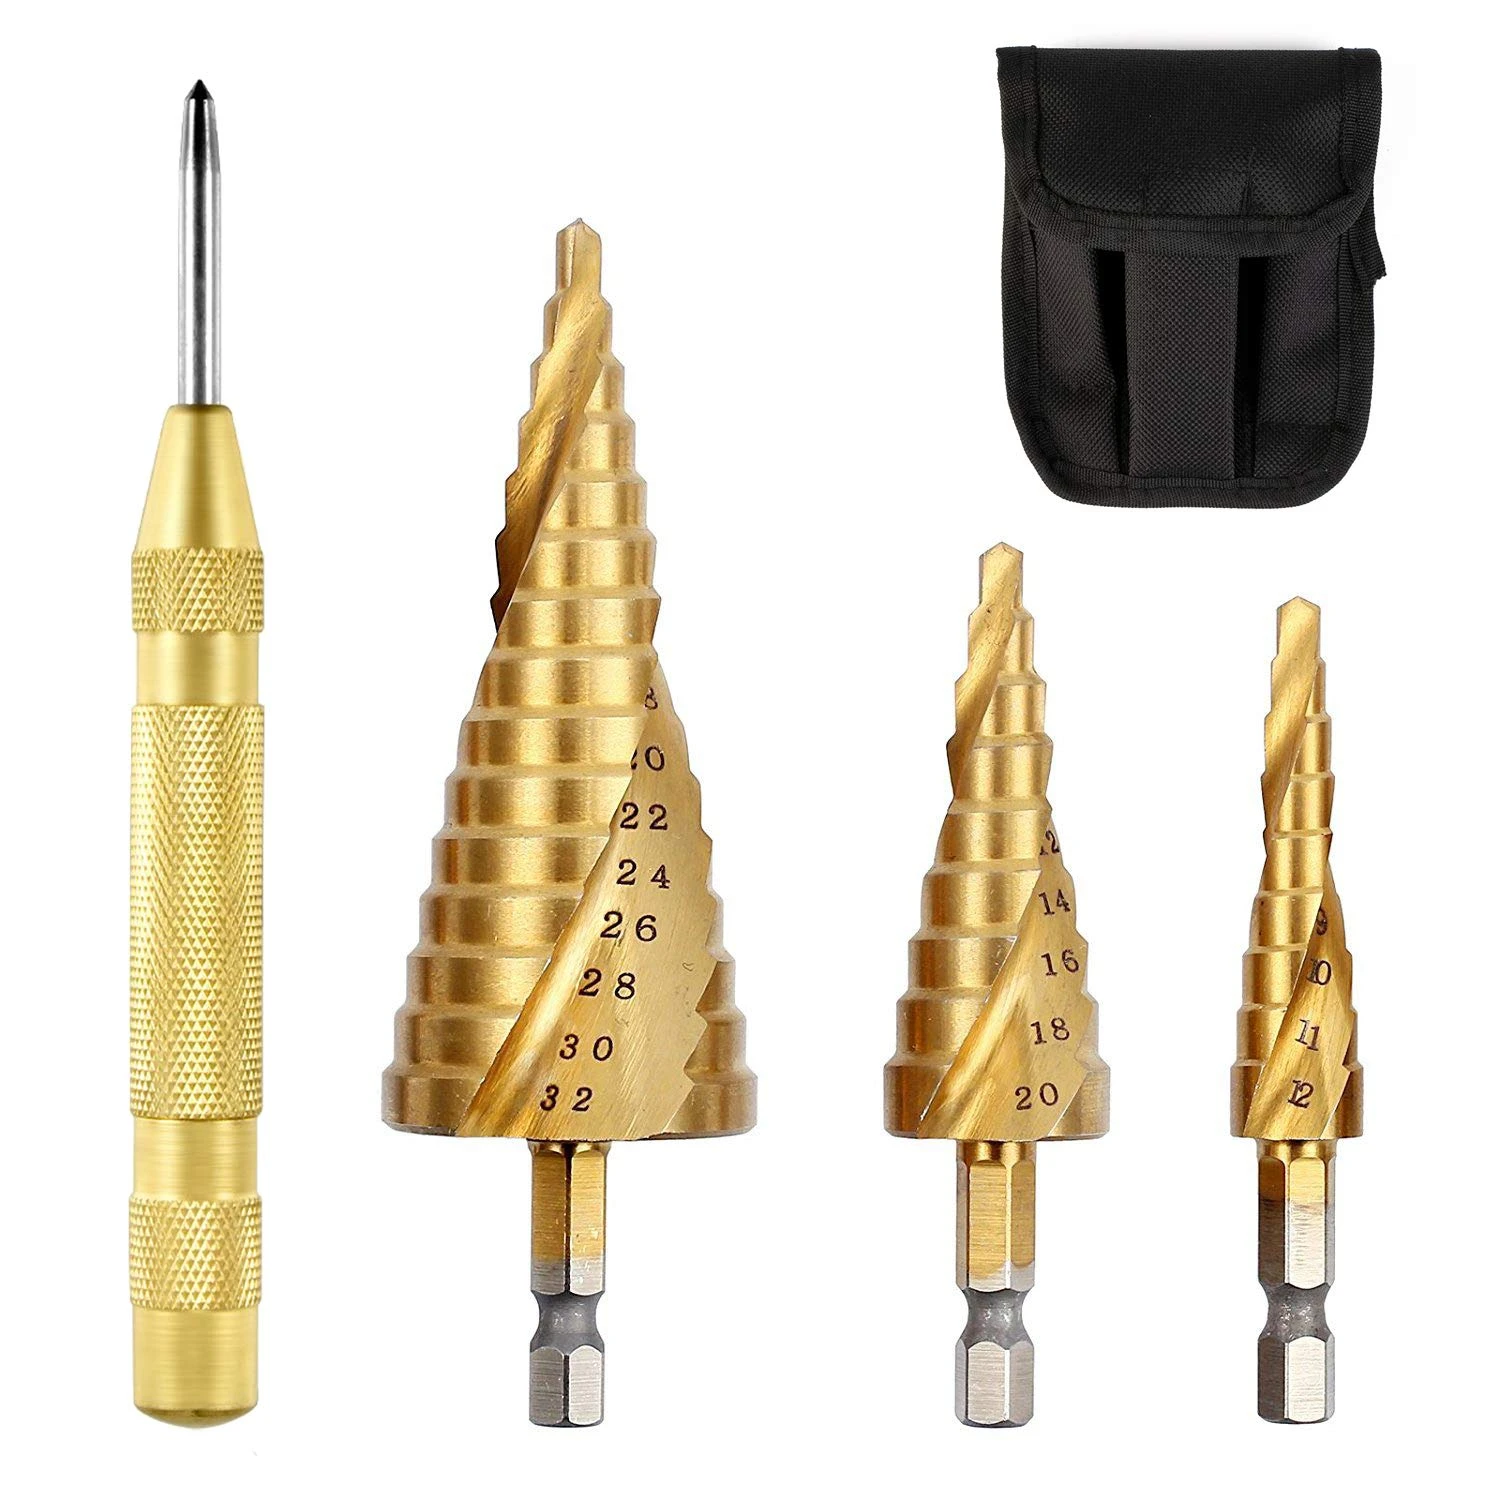 3pcs HSS Titanium Drill Bit 4-12 4-20 4-32 Drilling Power Tools Metal High Speed Steel Wood Hole Cutter Cone Drill bit